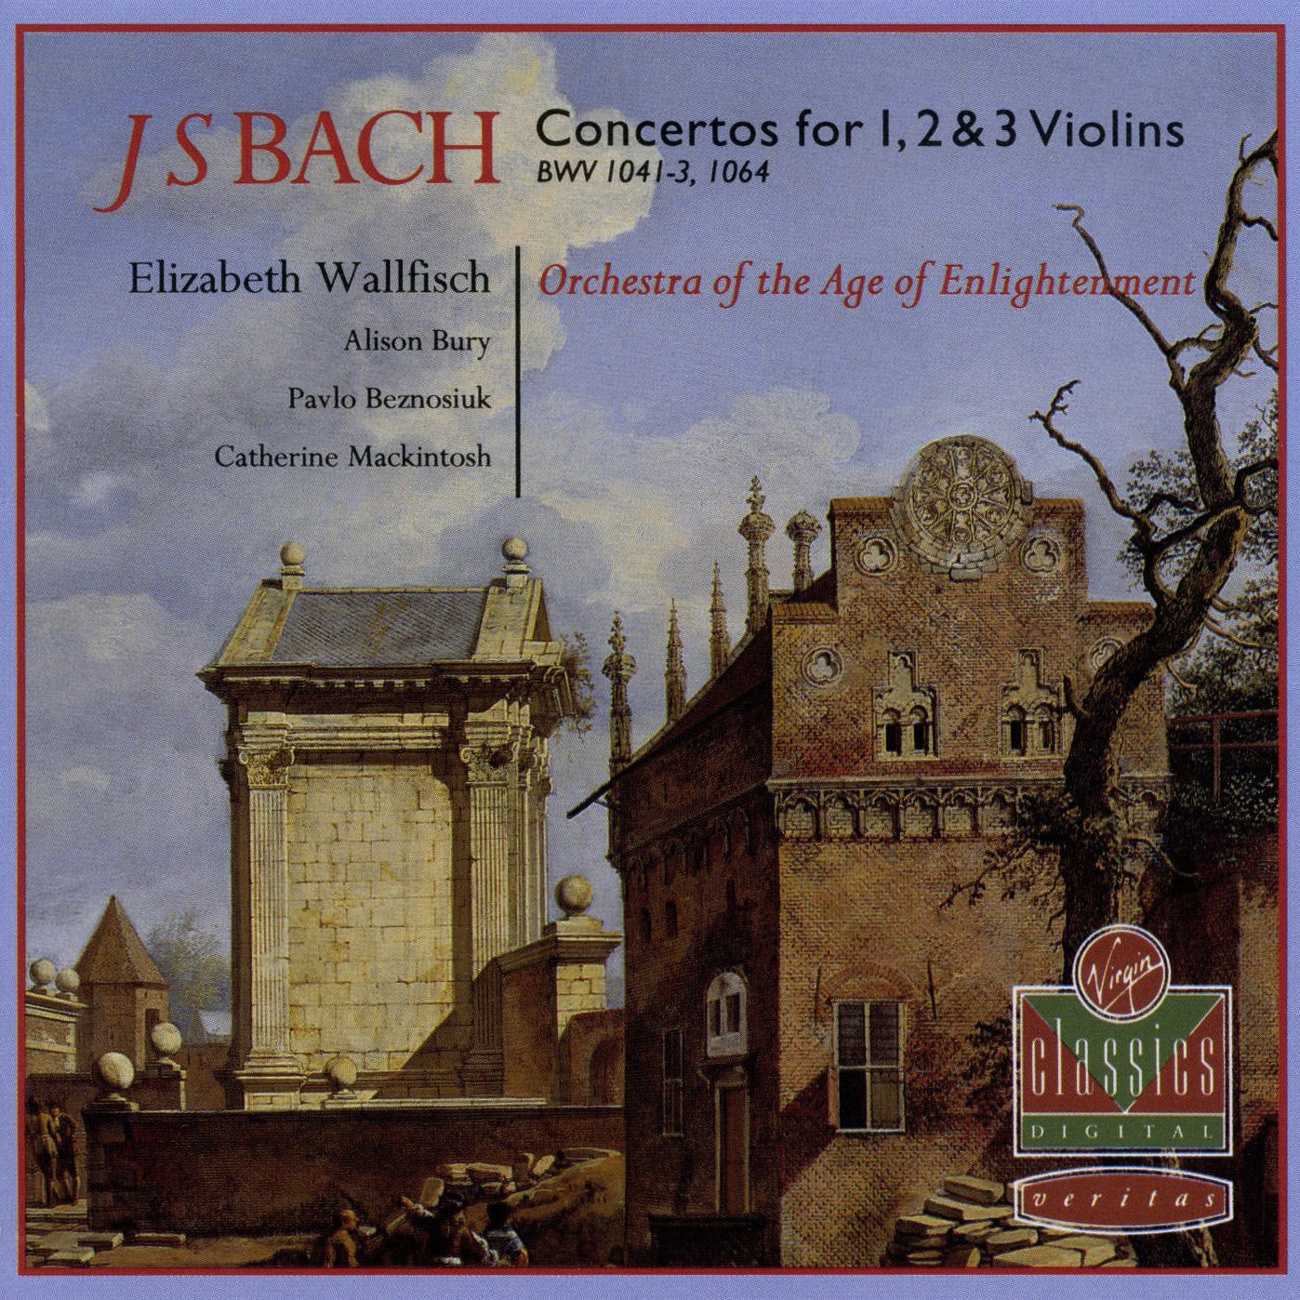 Violin Concerto in A minor BWV1041: I.    [Allegro]